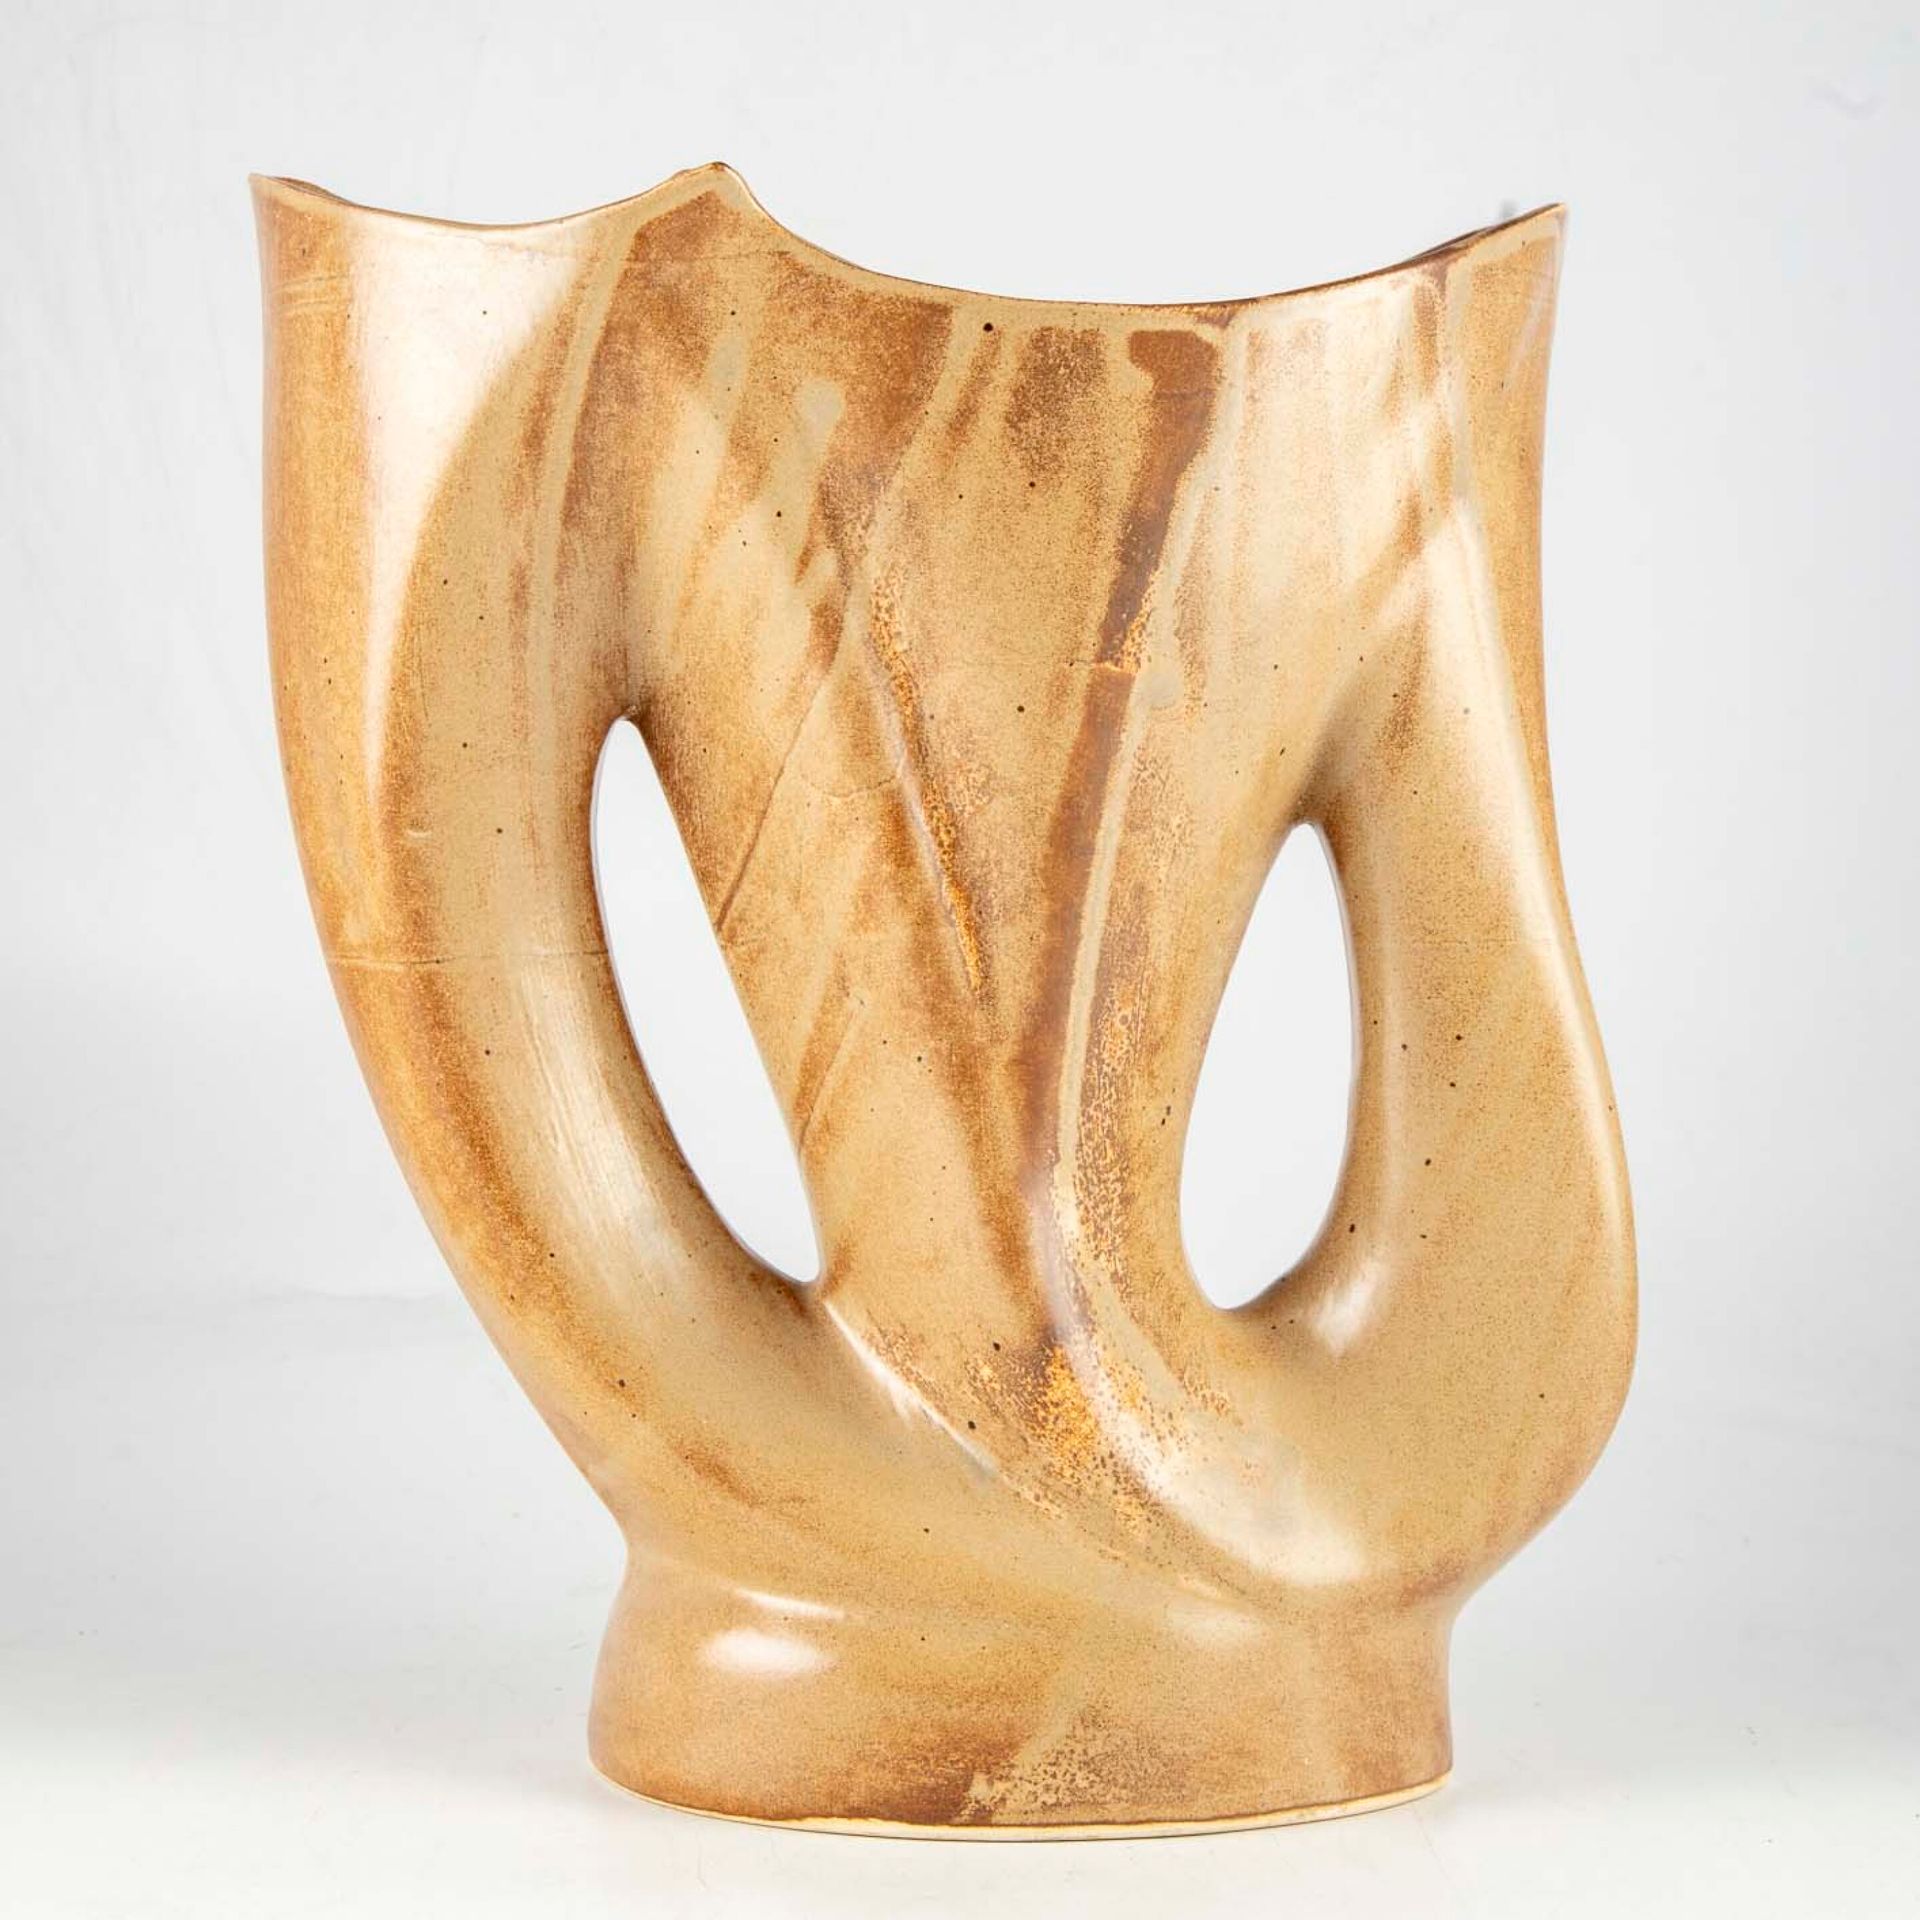 Null 瓦拉里斯(VALLAURIS)

珐琅彩陶器带柄花瓶

底座下有签名

H.33厘米

(划痕)